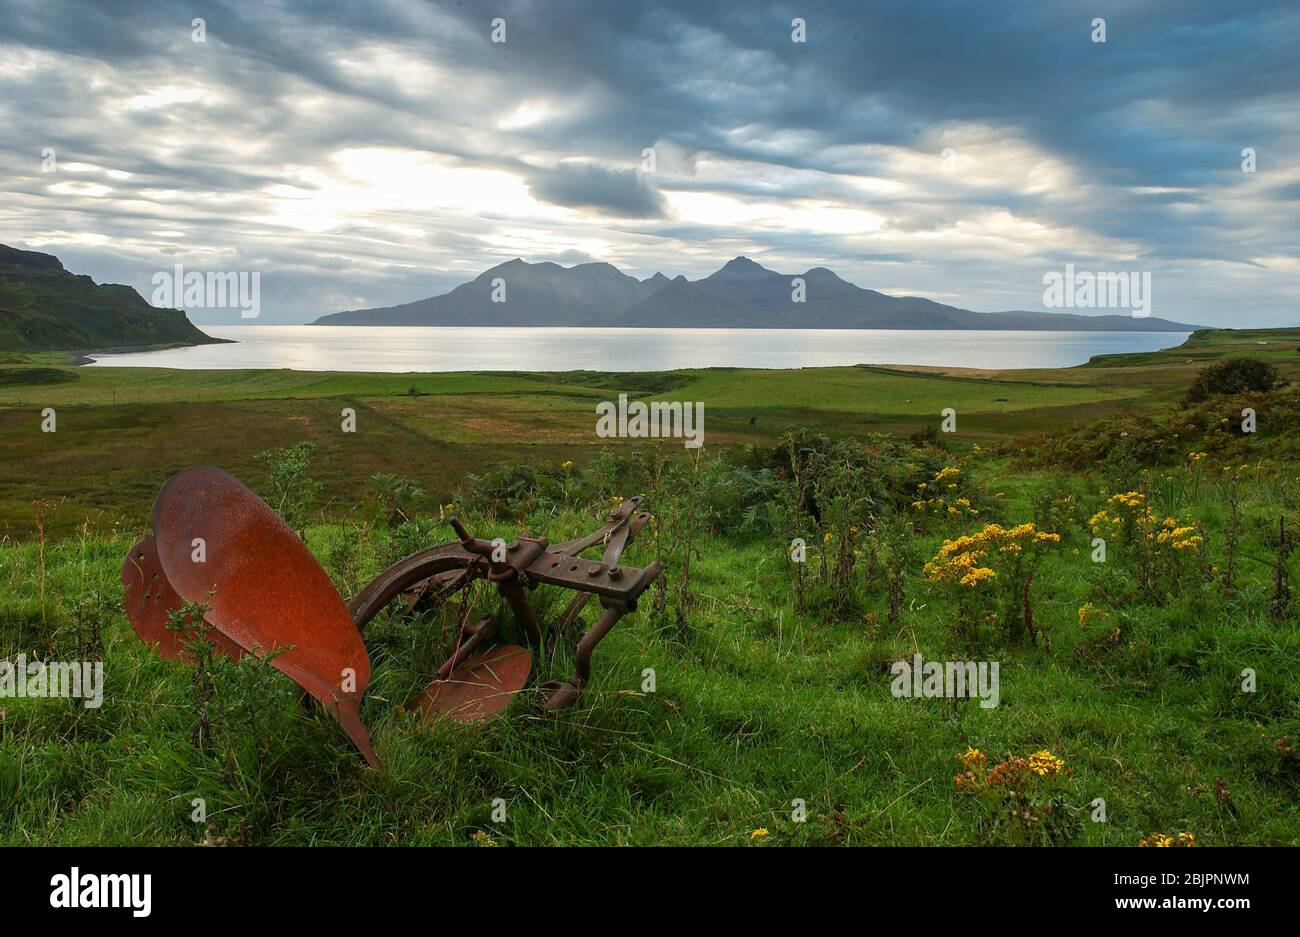 Un vecchio aratro in un campo sull'isola di Eigg con le montagne di Rum oltre. Le isole fanno parte delle piccole isole, le Ebridi interne, la Scozia. Foto Stock